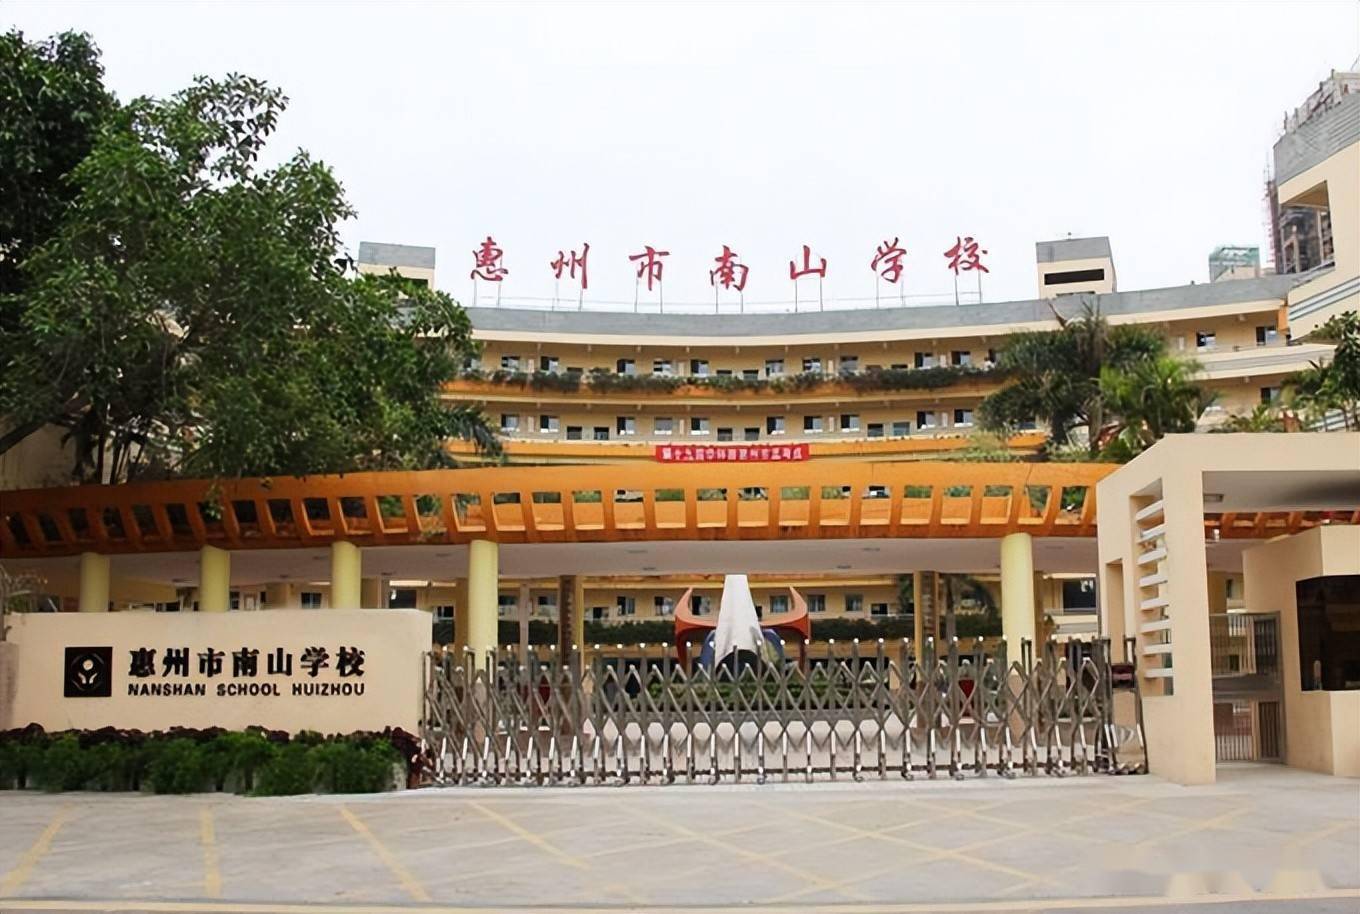 2001年创办的惠州市南山学校坐落在风景秀丽的南山脚下,是由深圳市